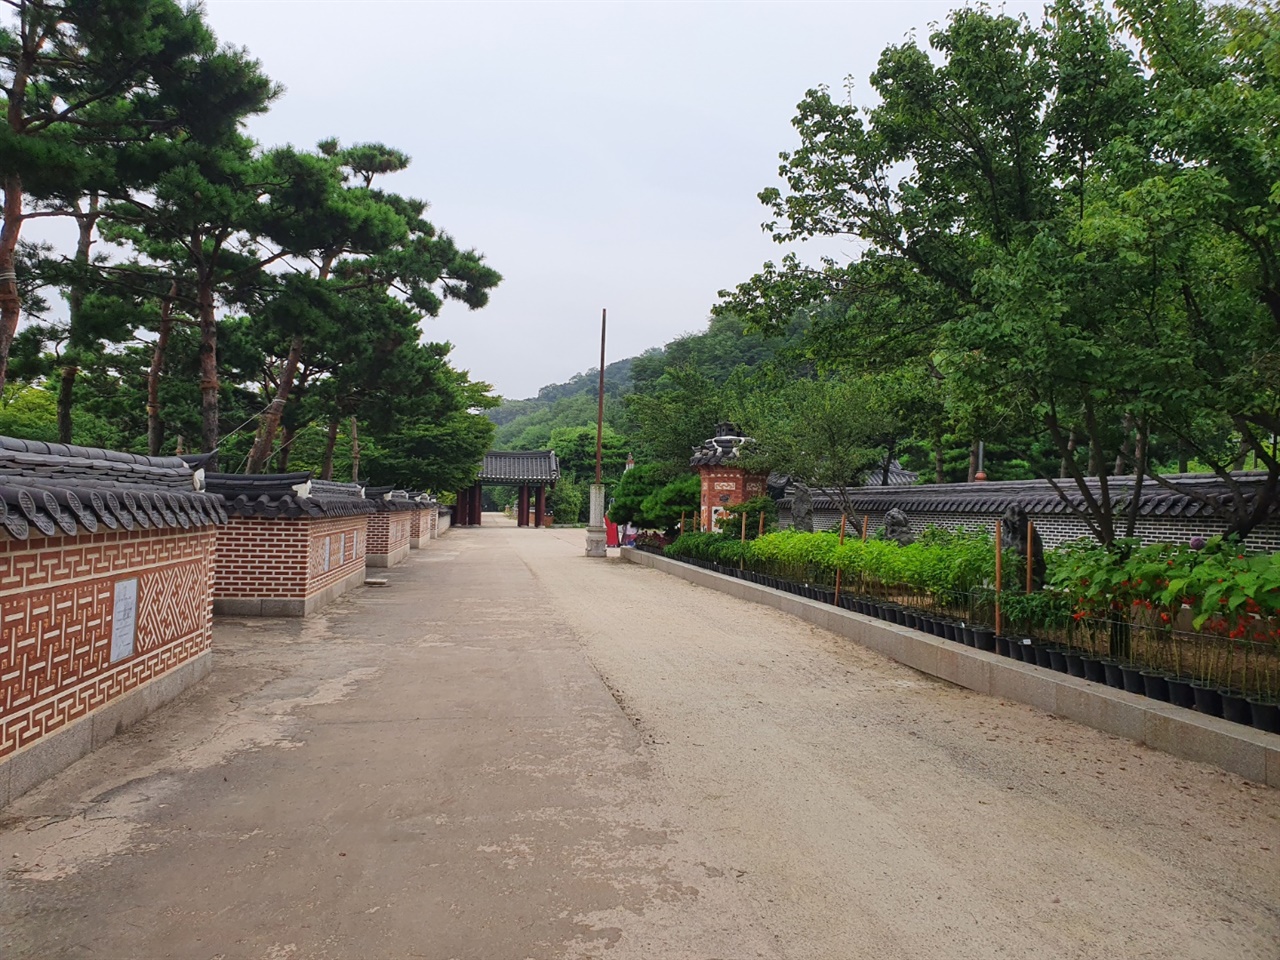 예전에 군부대가 주둔했던 월미공원의 한국전통정원은 궁궐, 민가의 원림들을 재현해 놓은 공원이다.